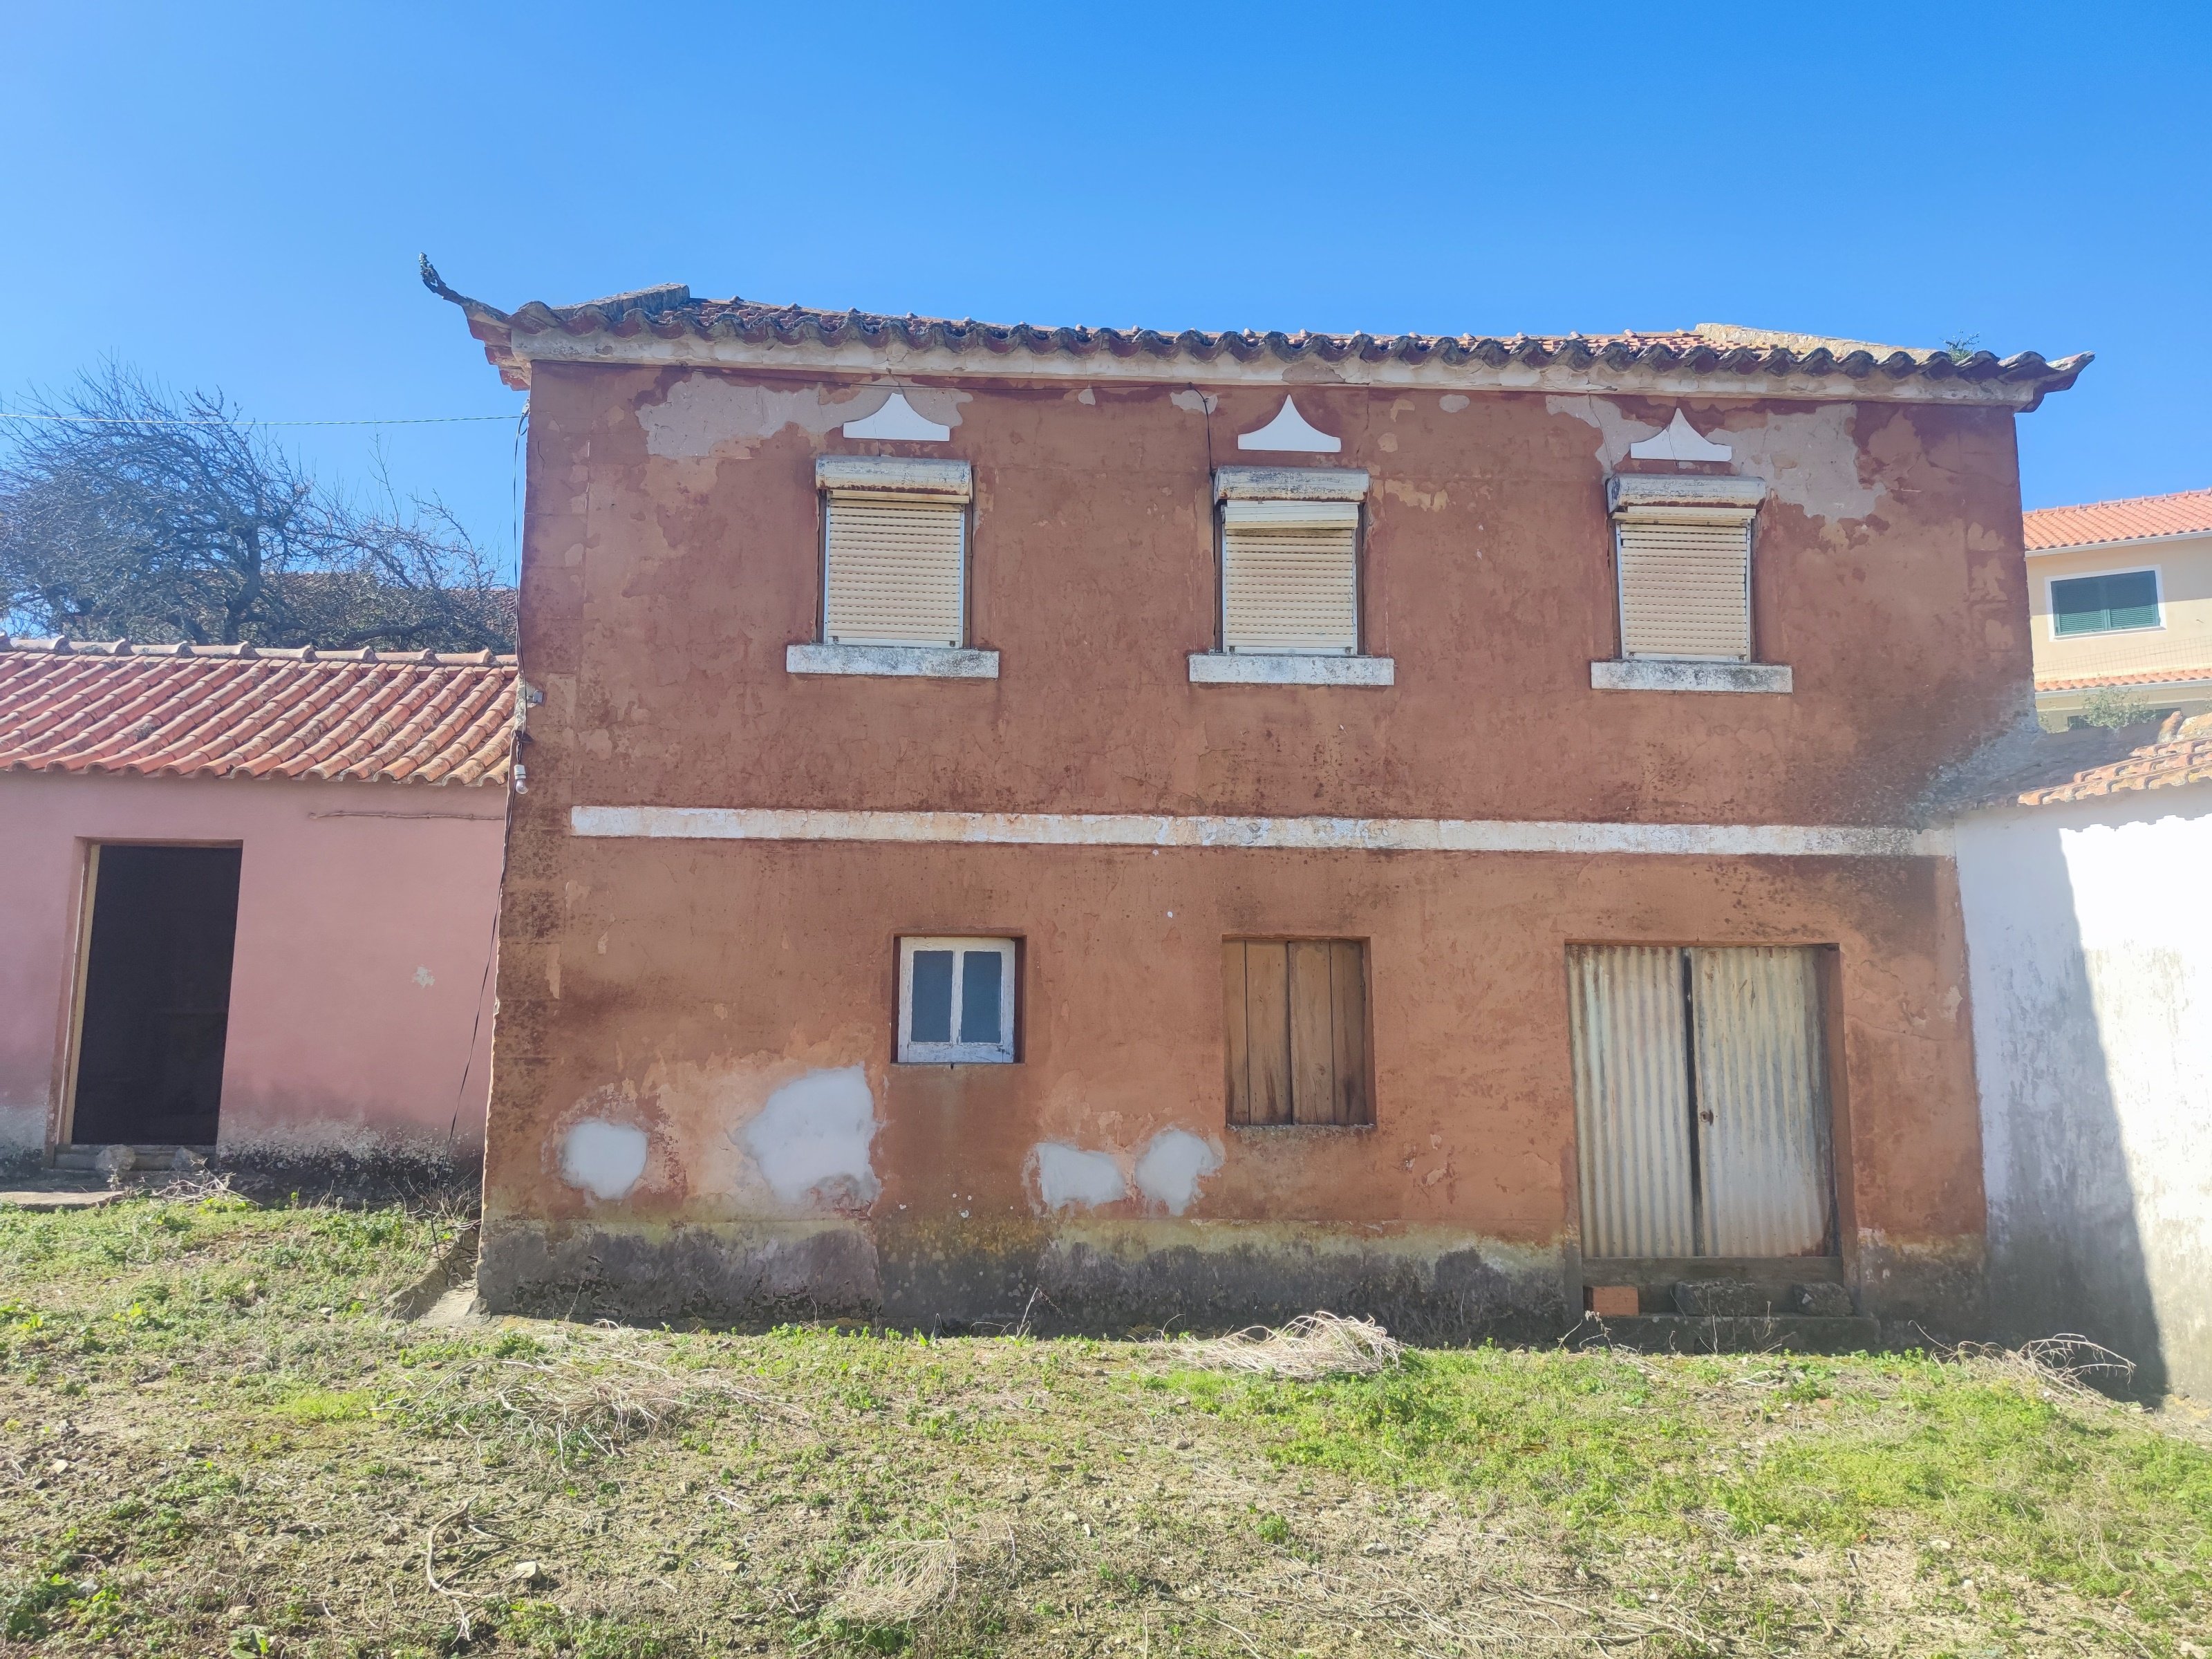 House for sale in Caldas Da Rainha, Silver Coast, Portugal 3602329184